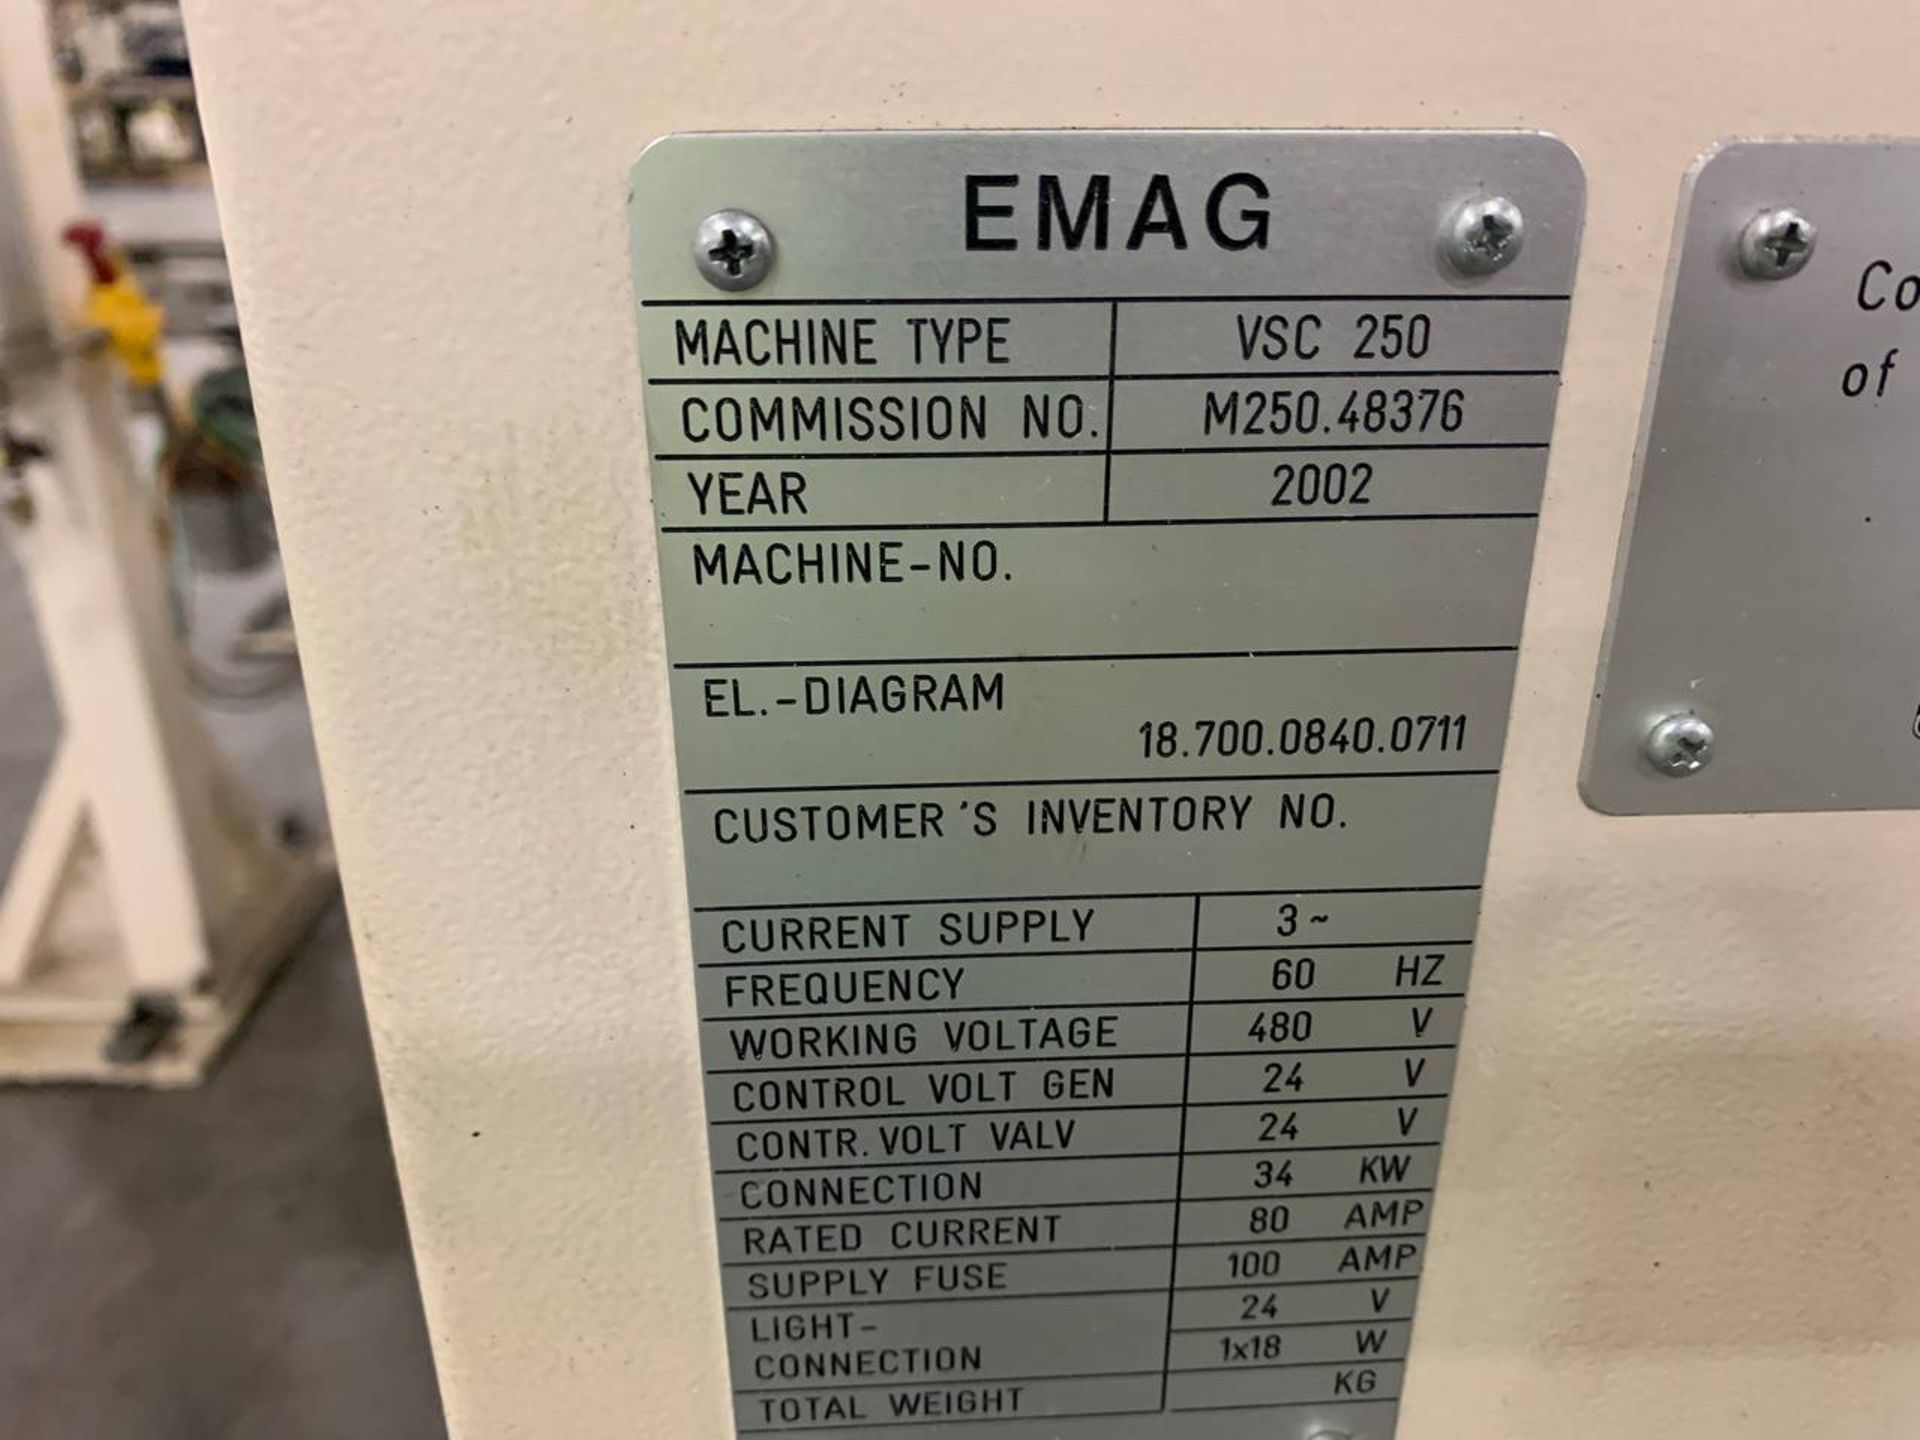 2002 Emag VSC 250 CNC Lathe - Image 2 of 3